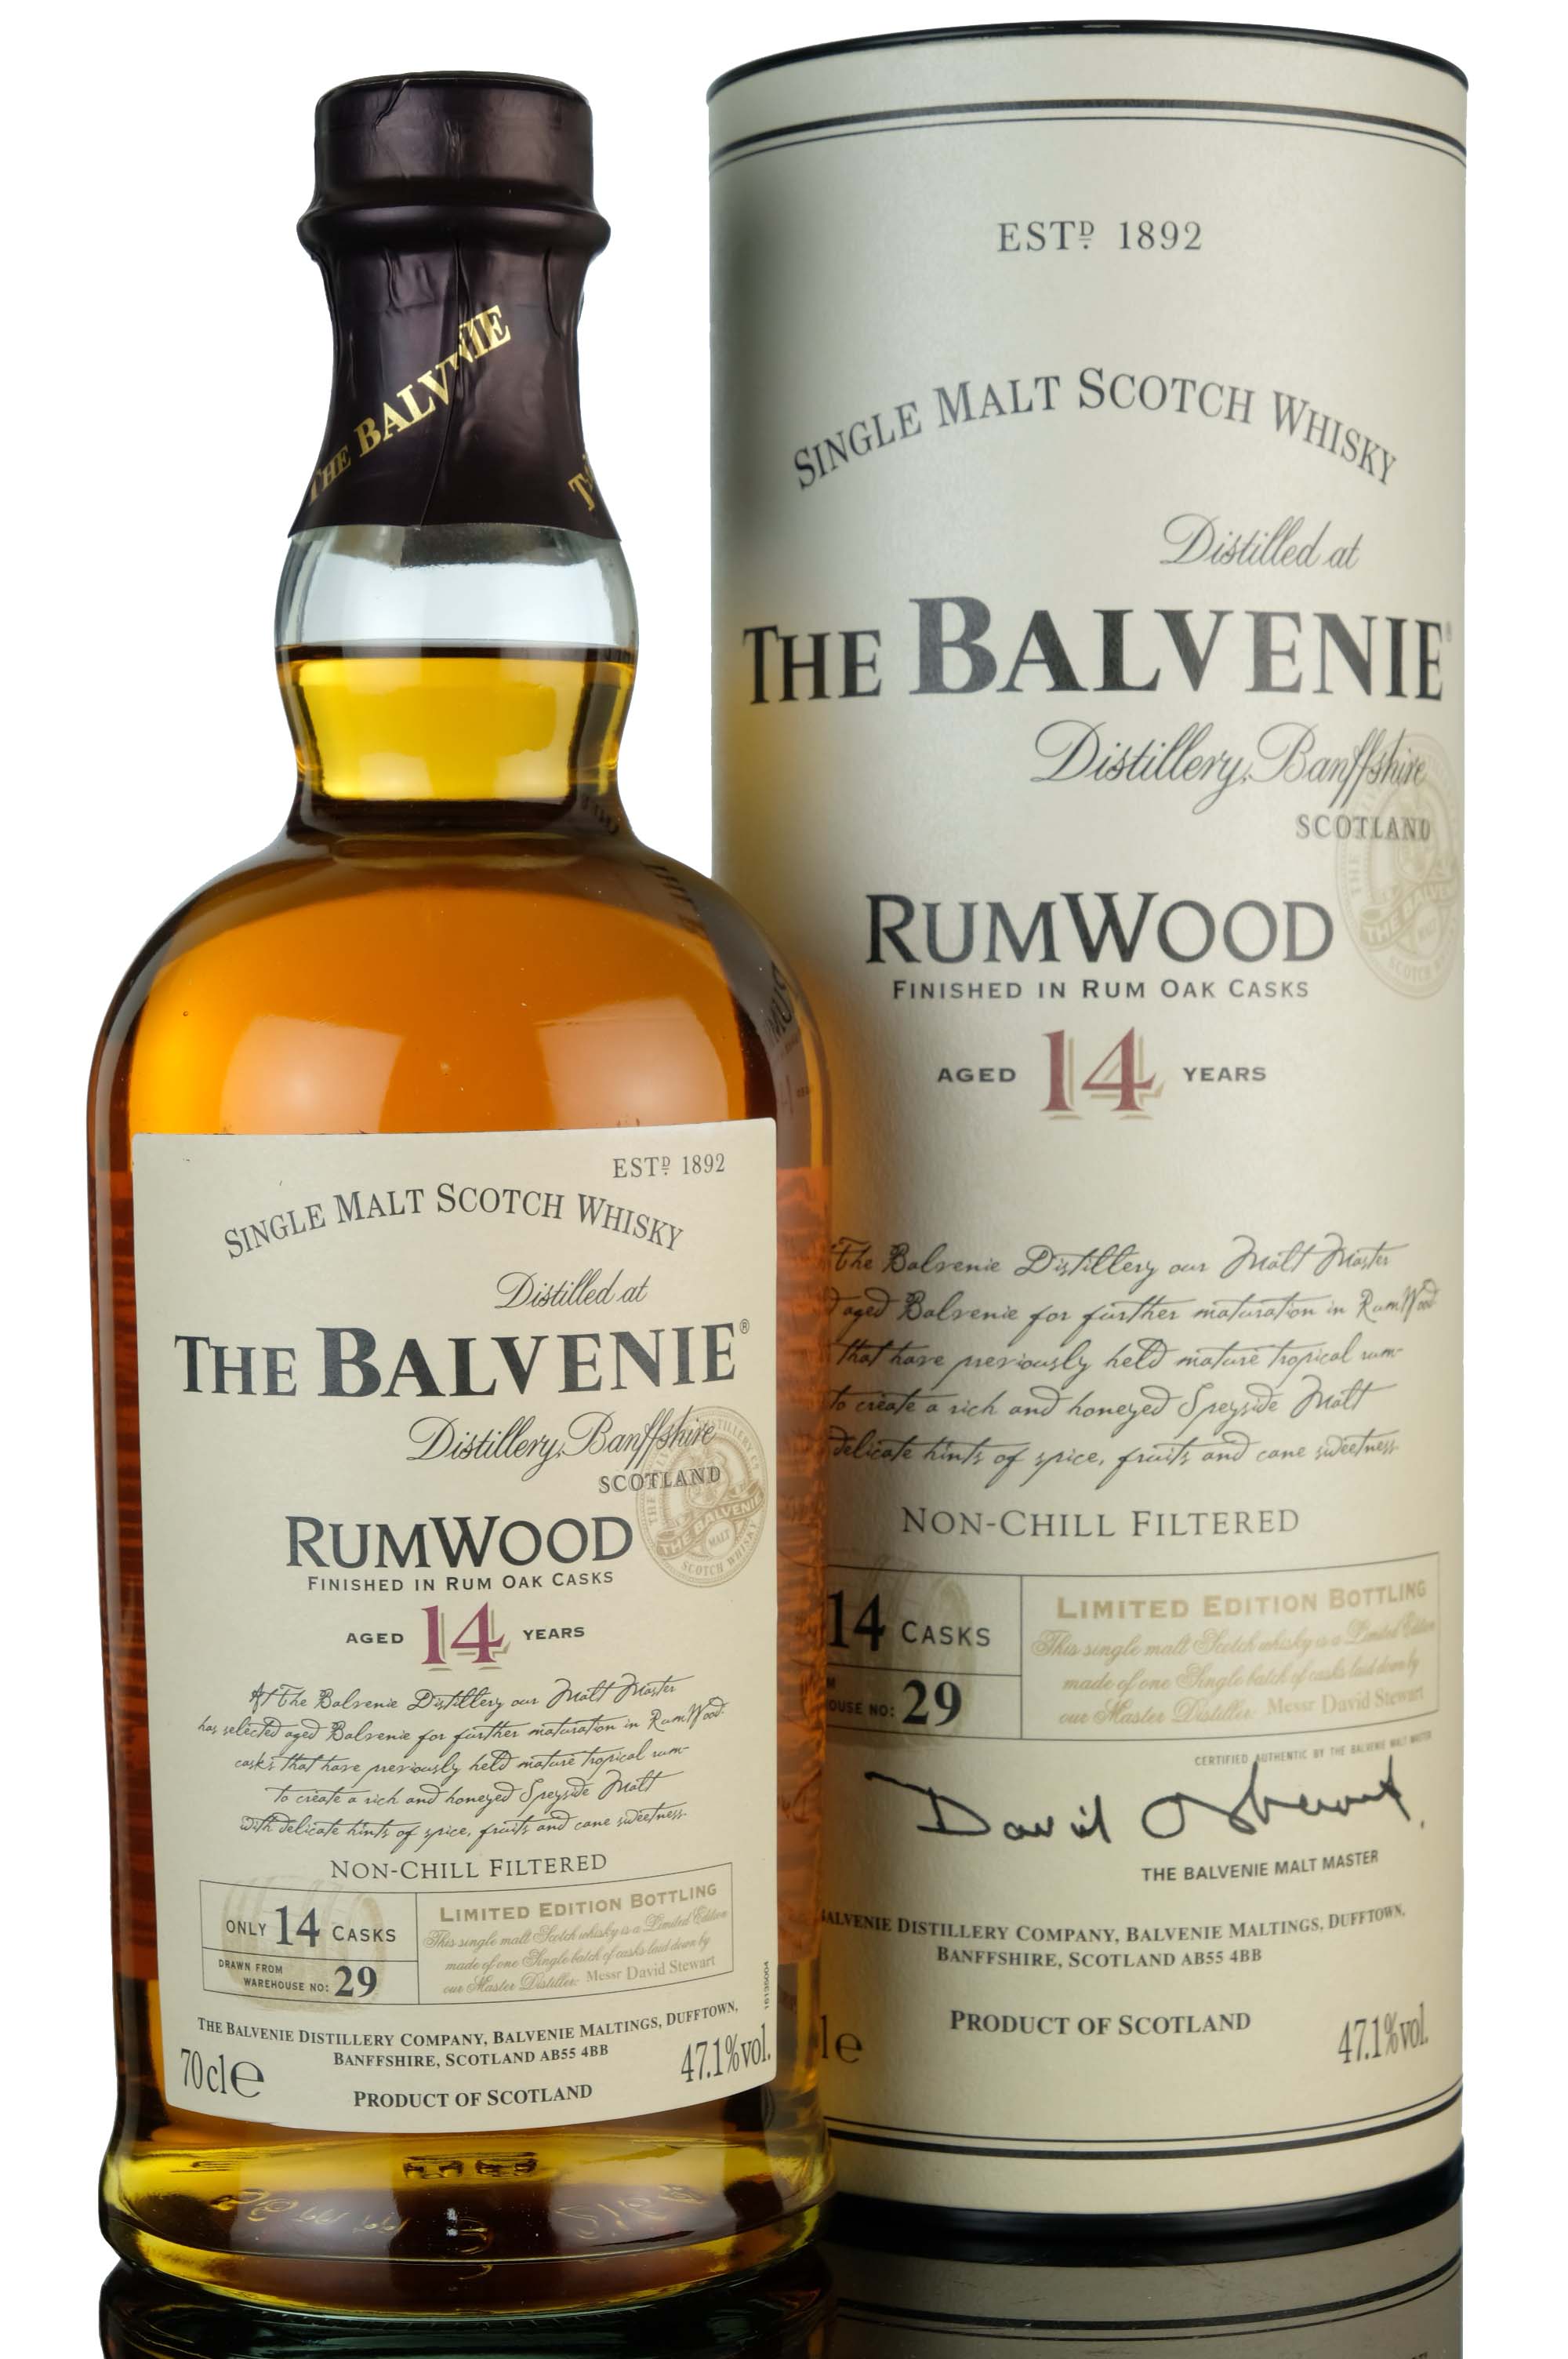 Balvenie 14 Year Old - RumWood - 2005 Release